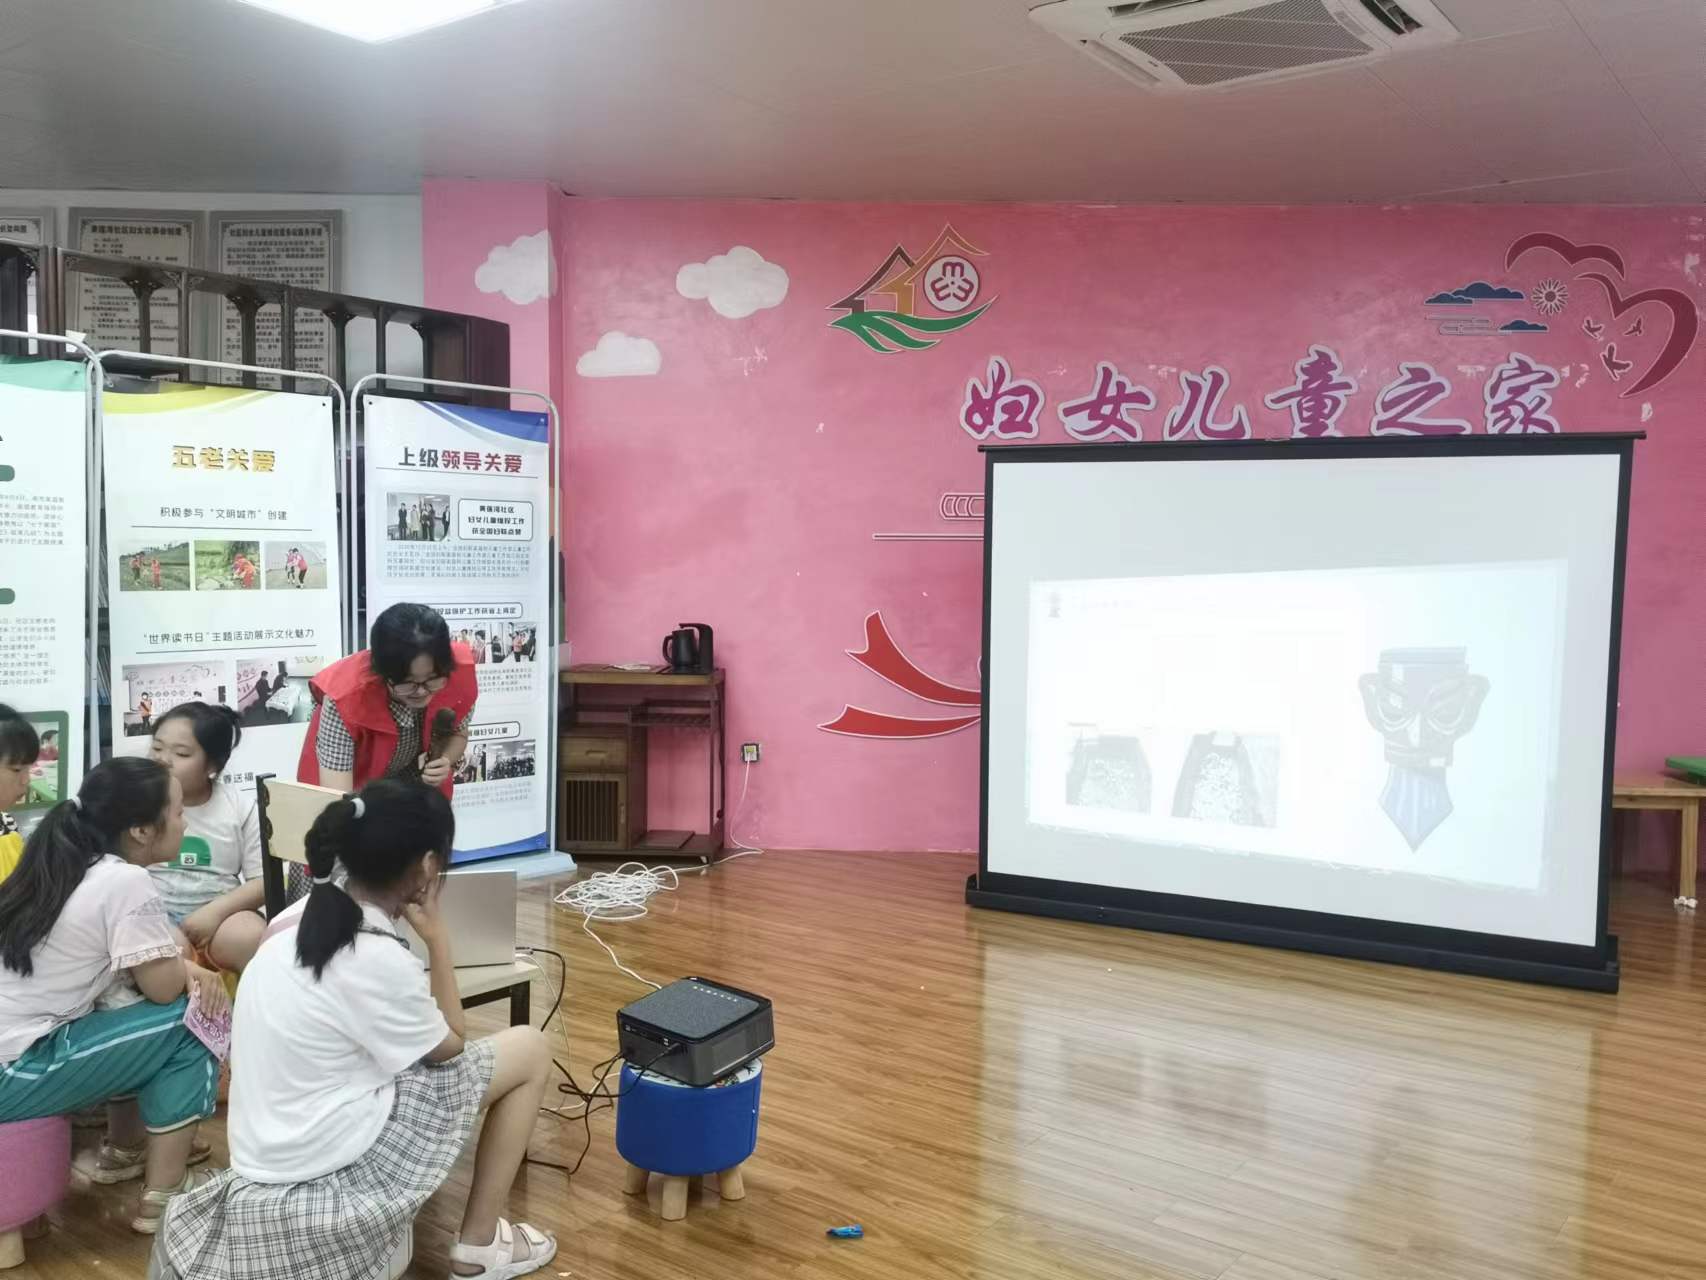 团队成员为小朋友们宣讲三星堆文物背后的故事 中国青年网通讯员 文钧敏 供图.jpg